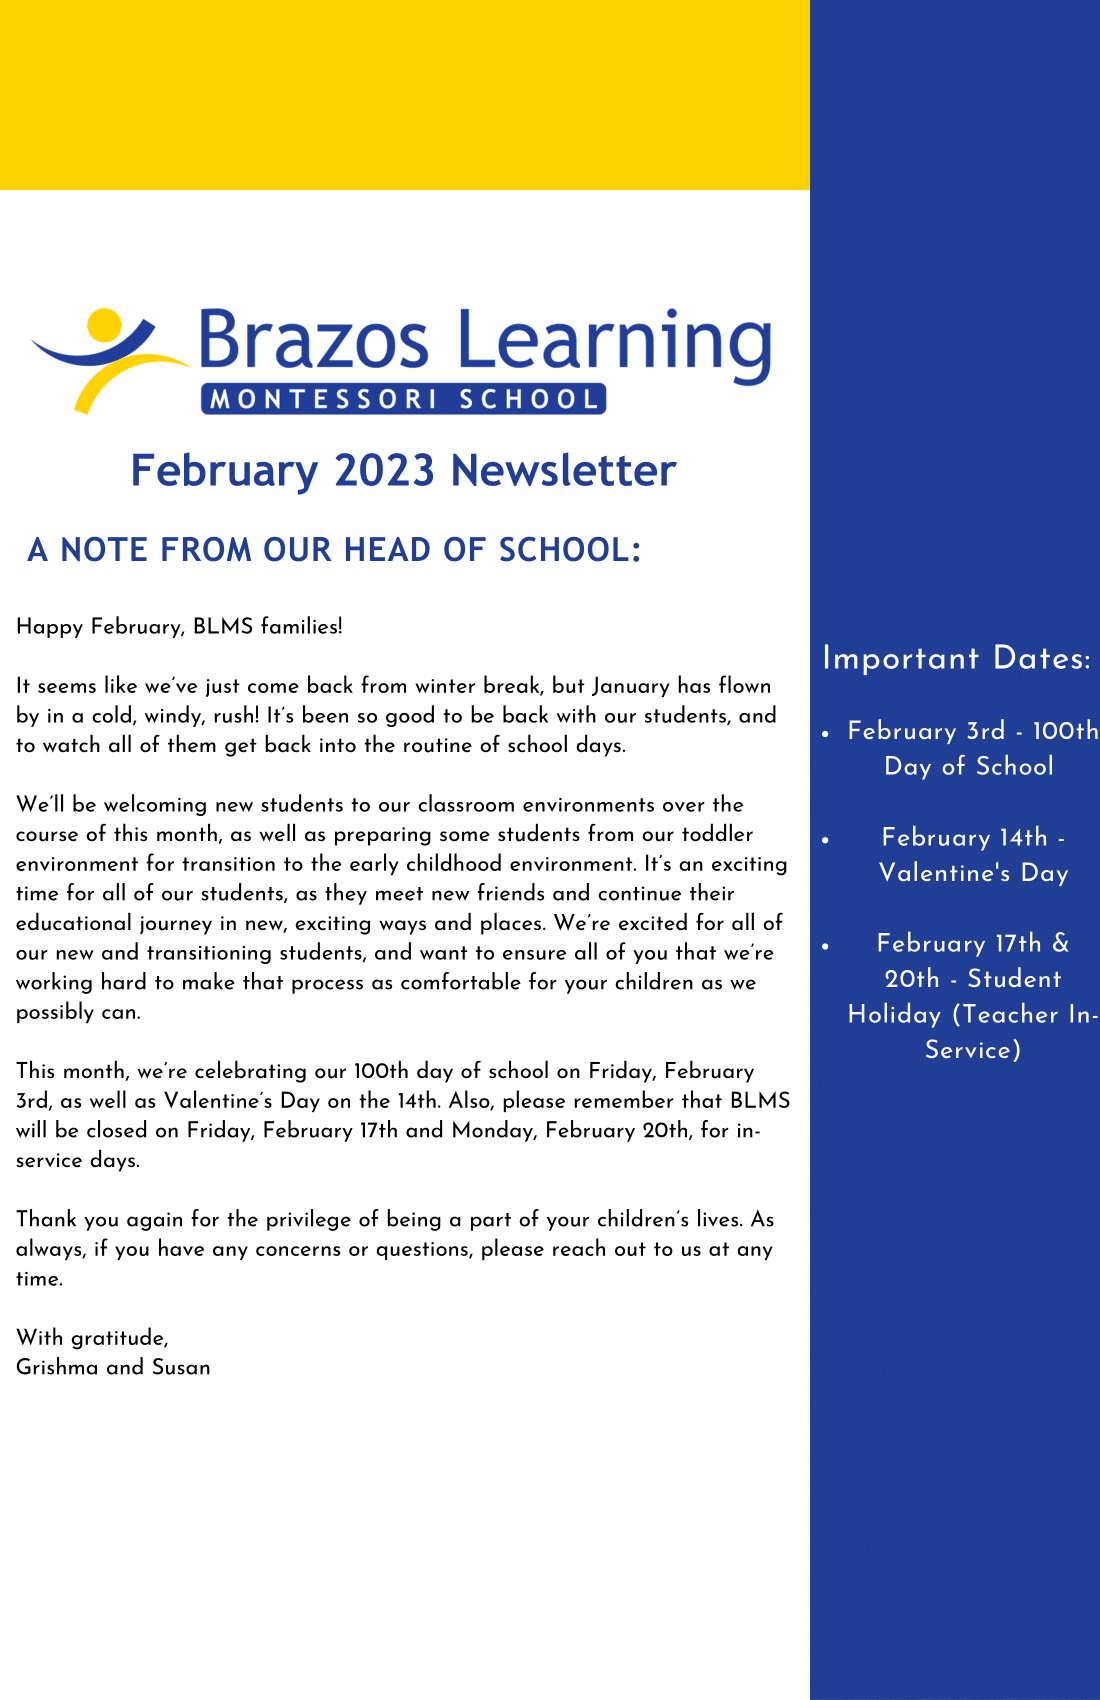 February Newsletter 2023